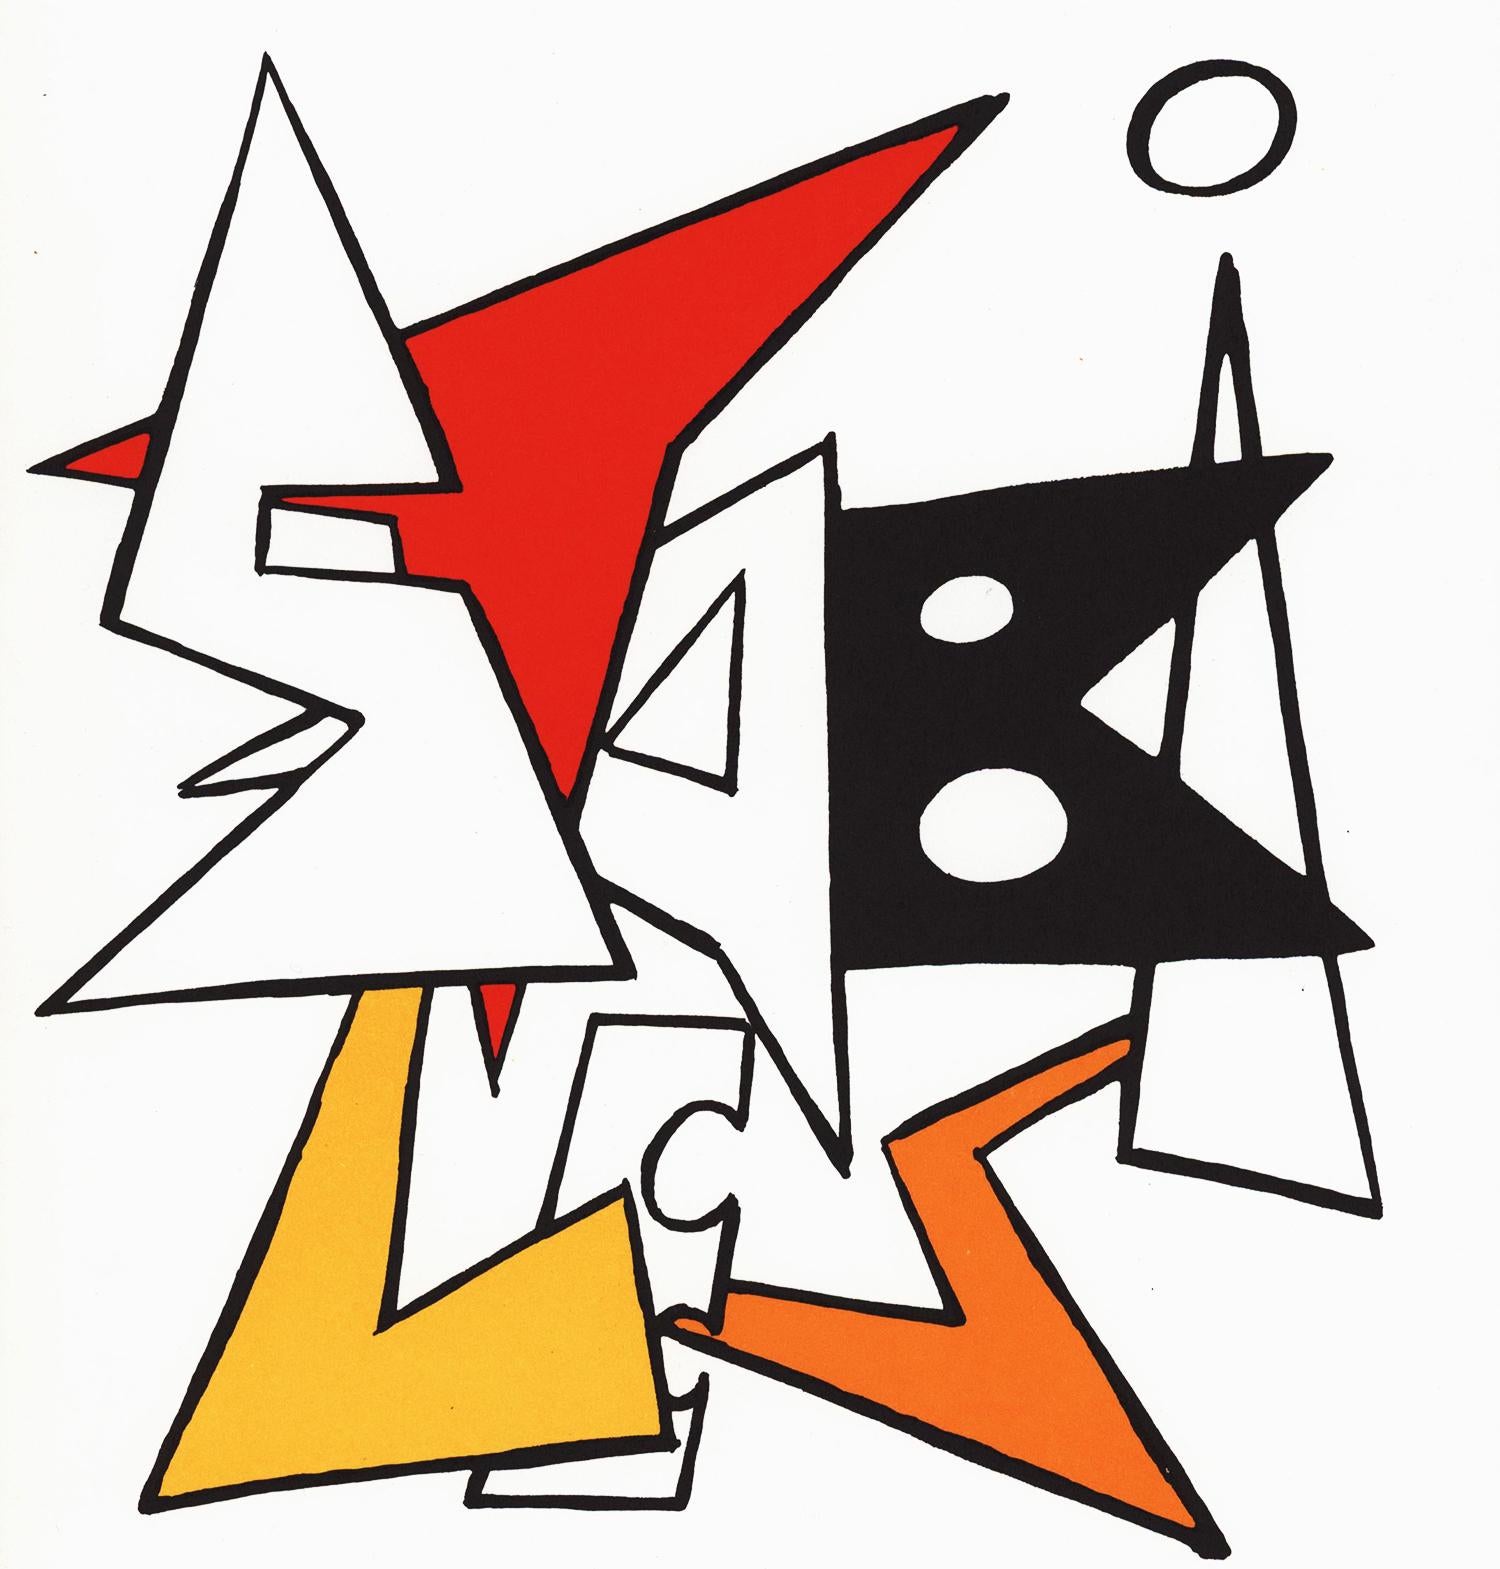 Couverture lithographique d'Alexander Calder des années 1960 (tirée de Derrière le miroir) - Contemporain Print par (after) Alexander Calder